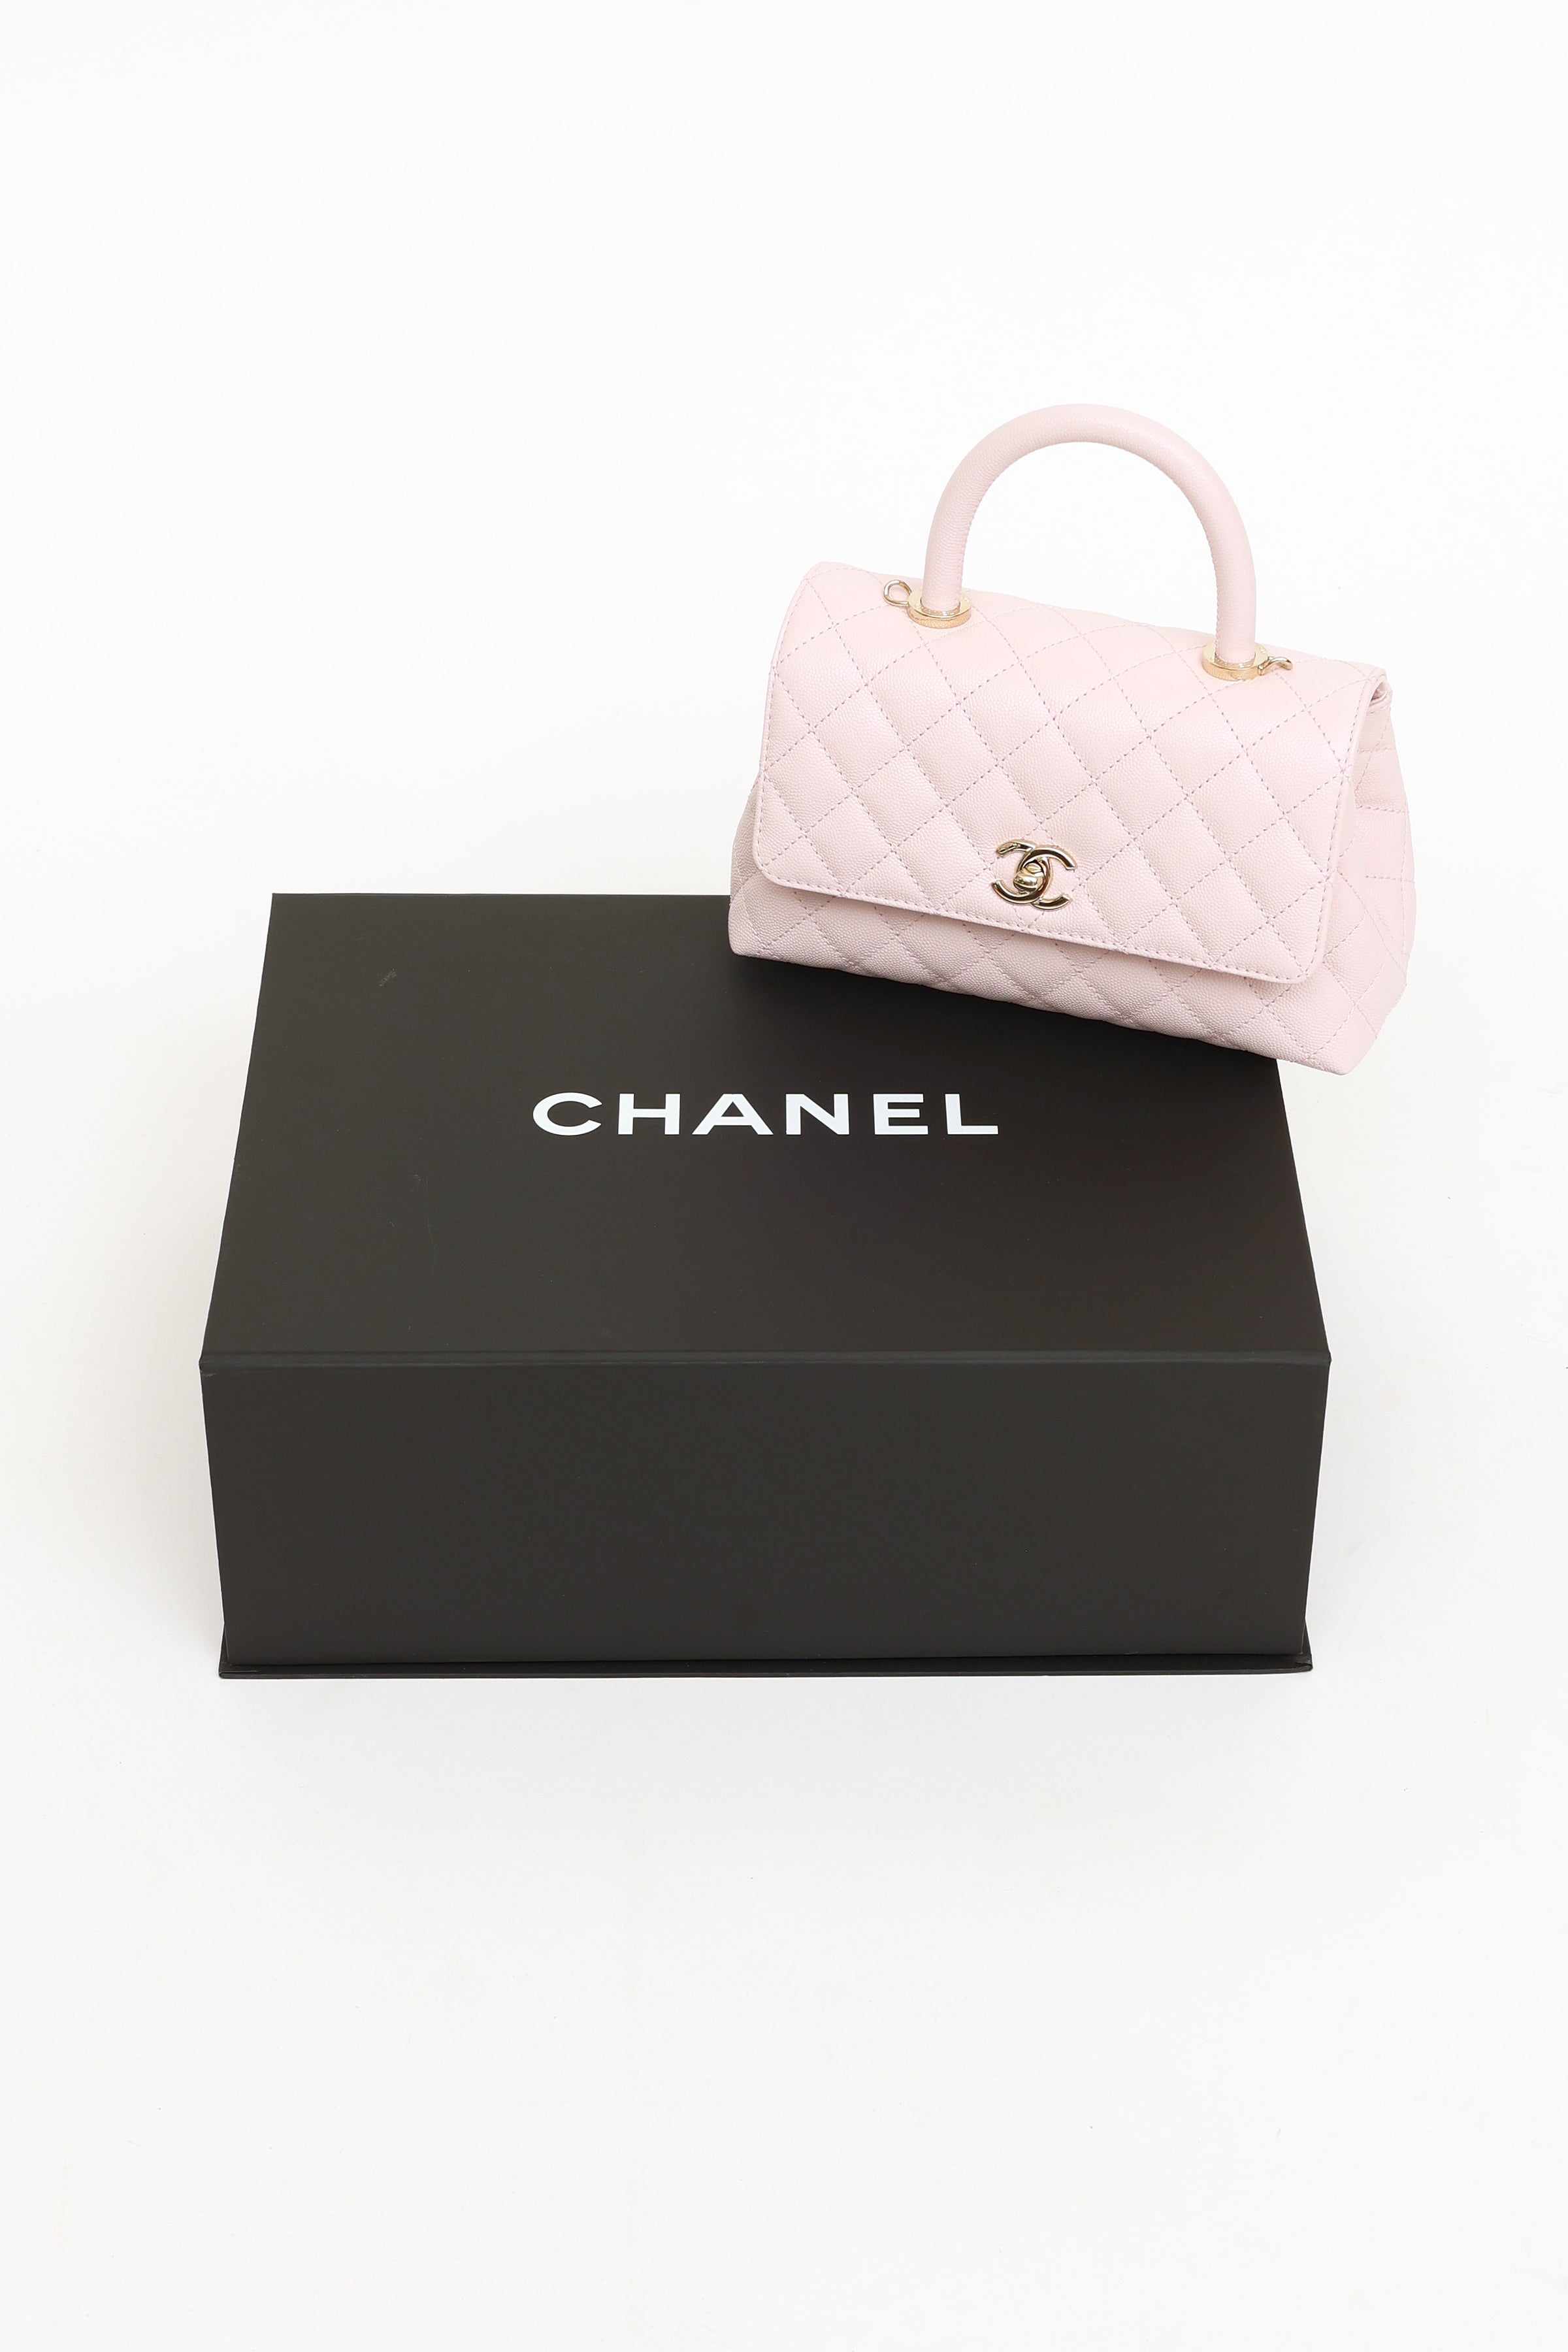 Chanel Coco Handle Mini vs Small Comparison, What Fits Inside